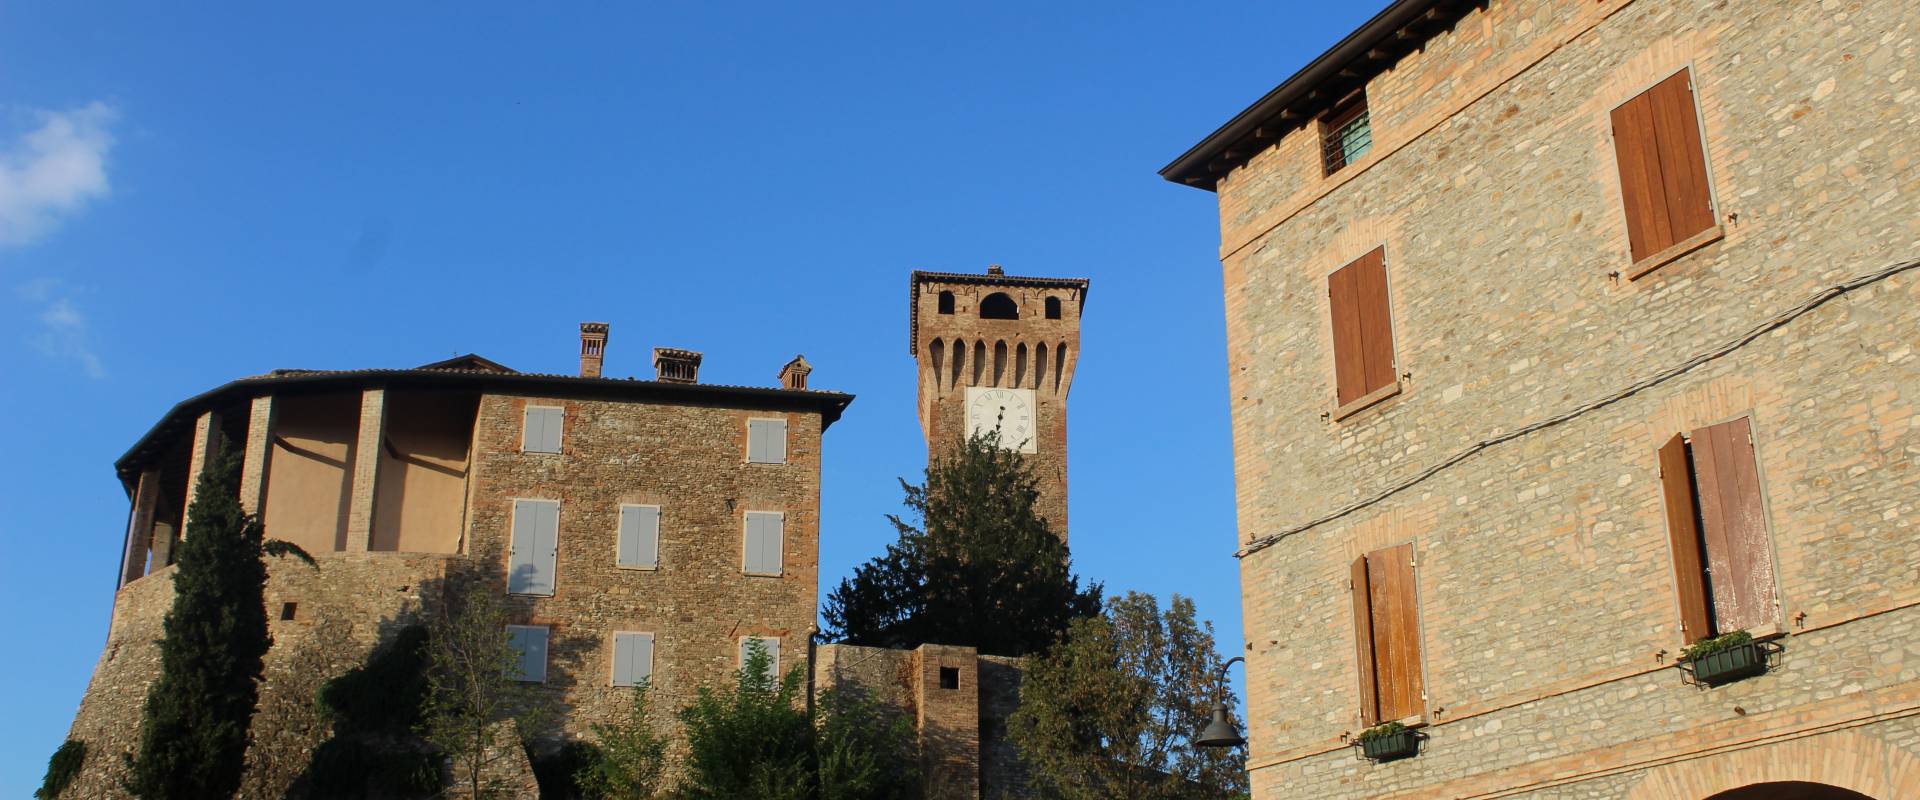 Parte del castello di Levizzano foto di Franchinidiletta